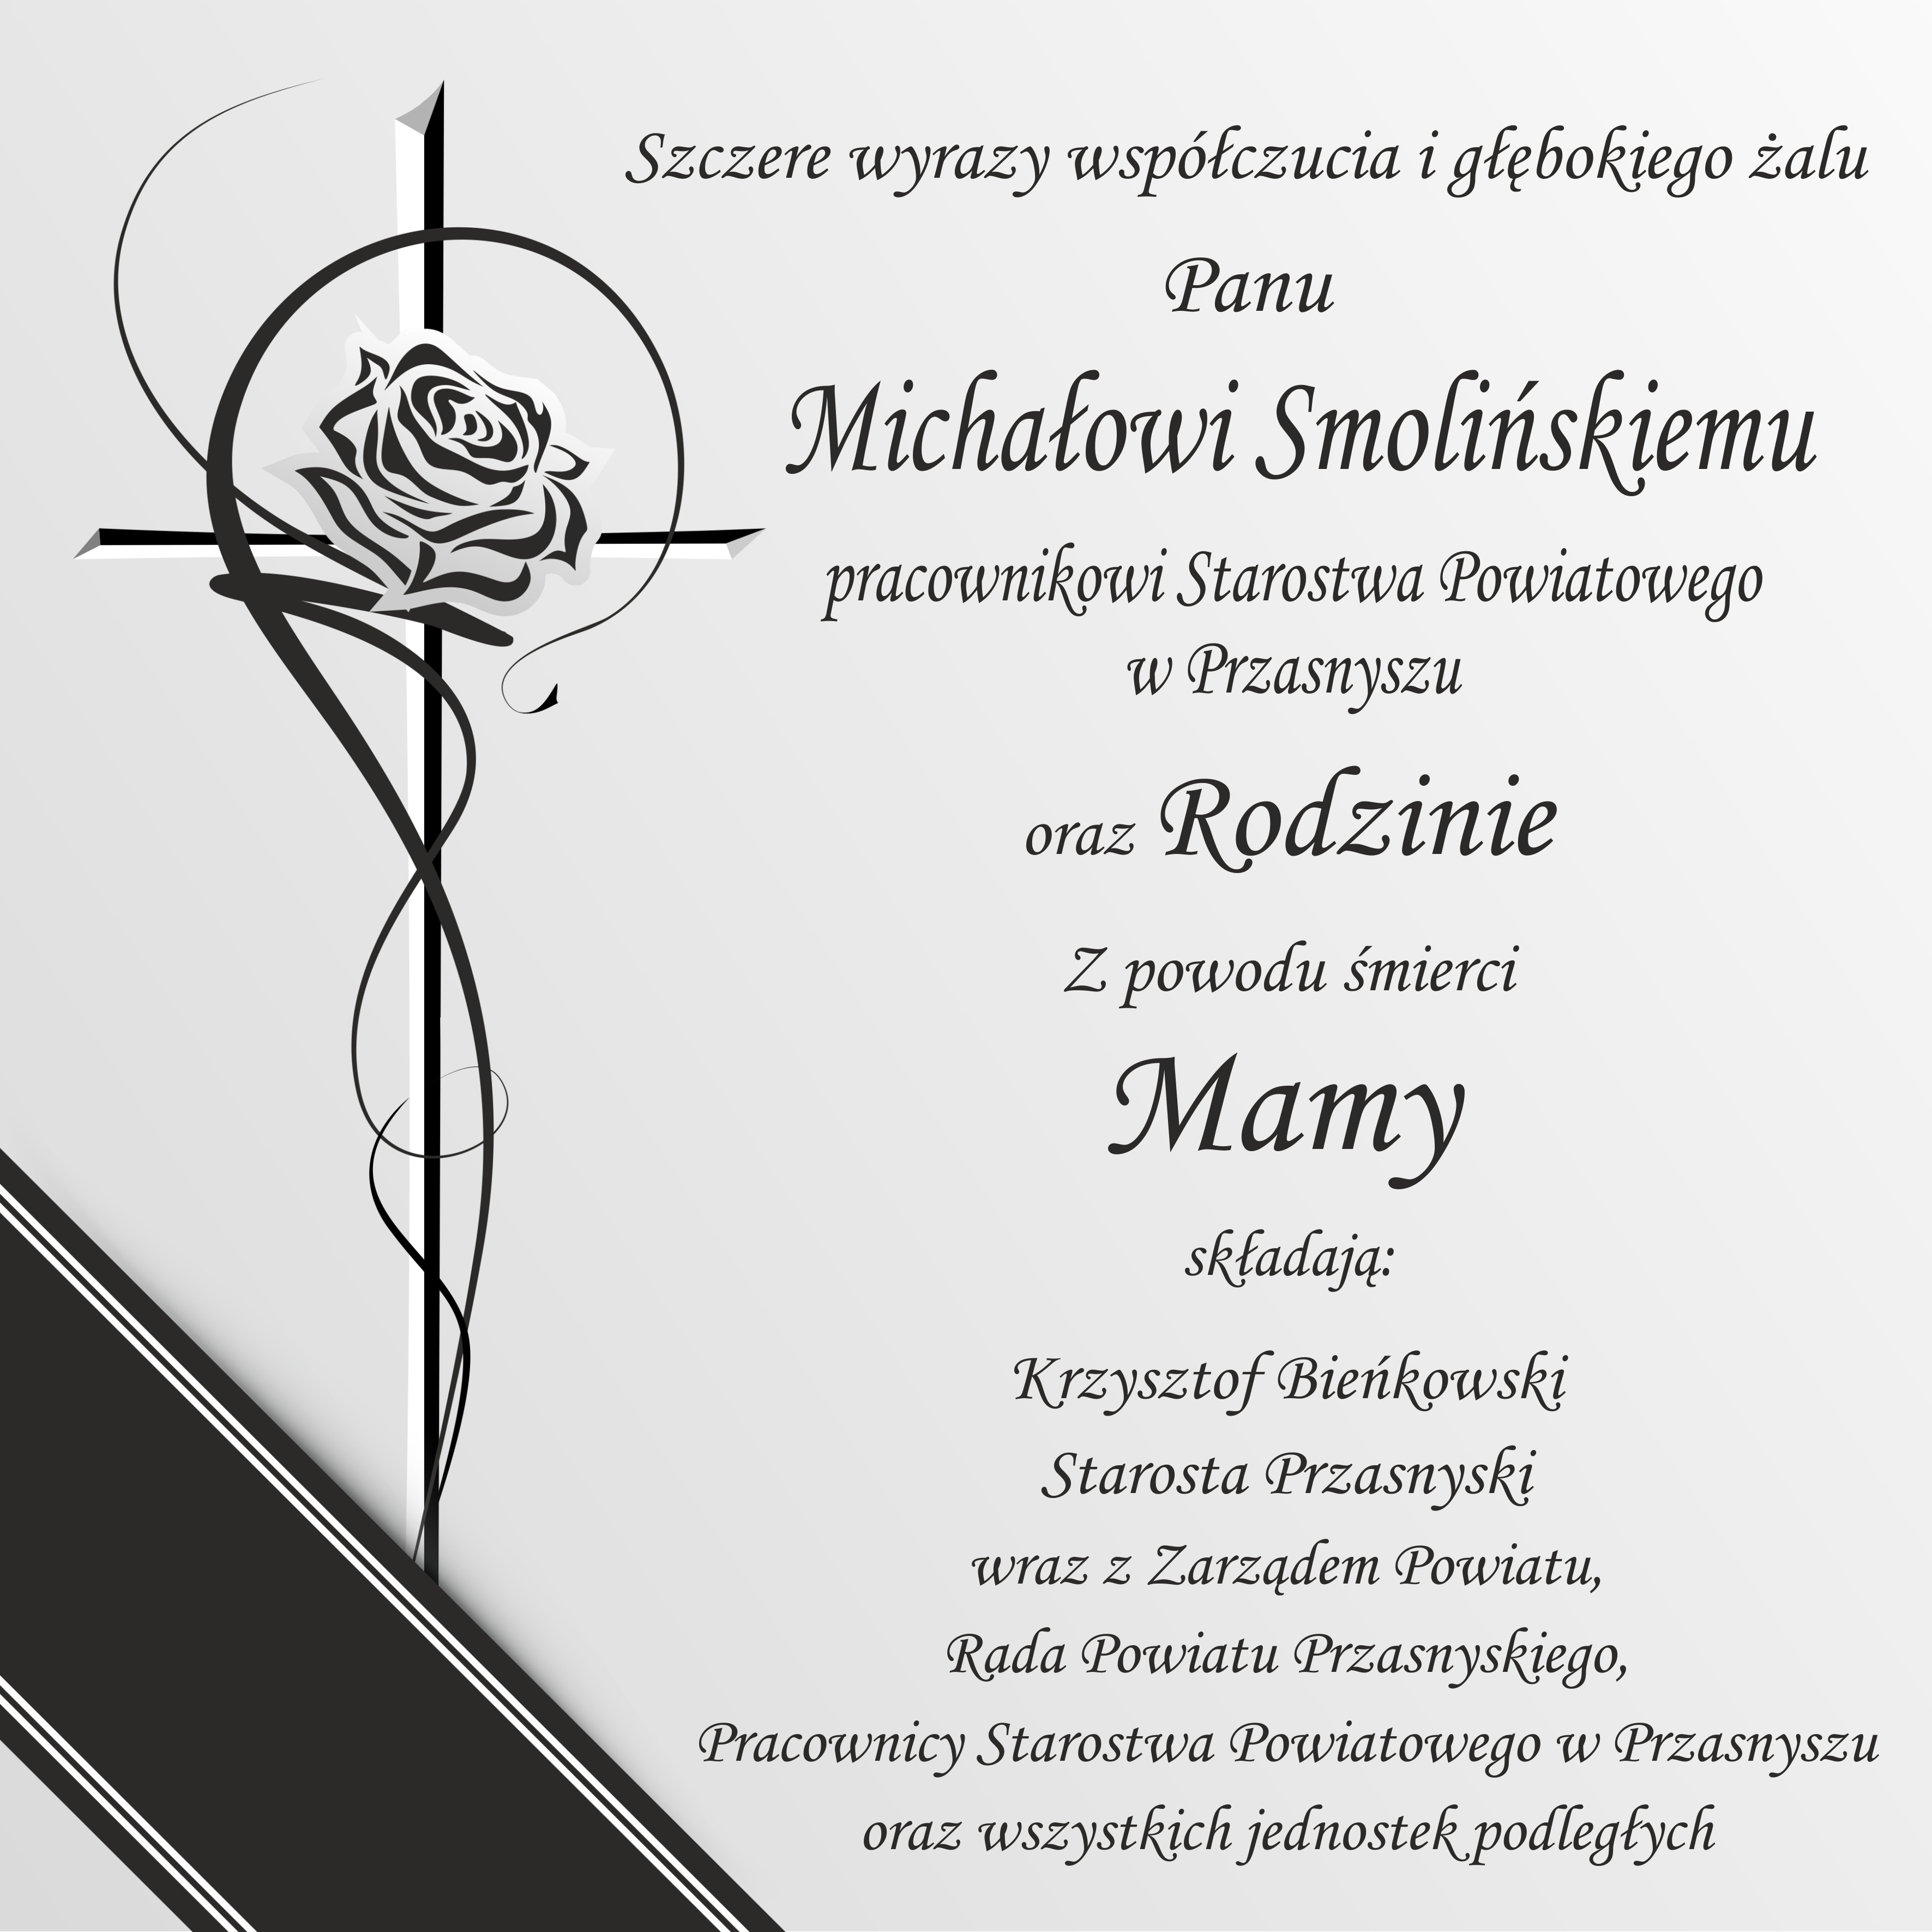 grafika kondolencyjna, krzyż z różą i napis po prawej stronie (treść jak akrtykule)